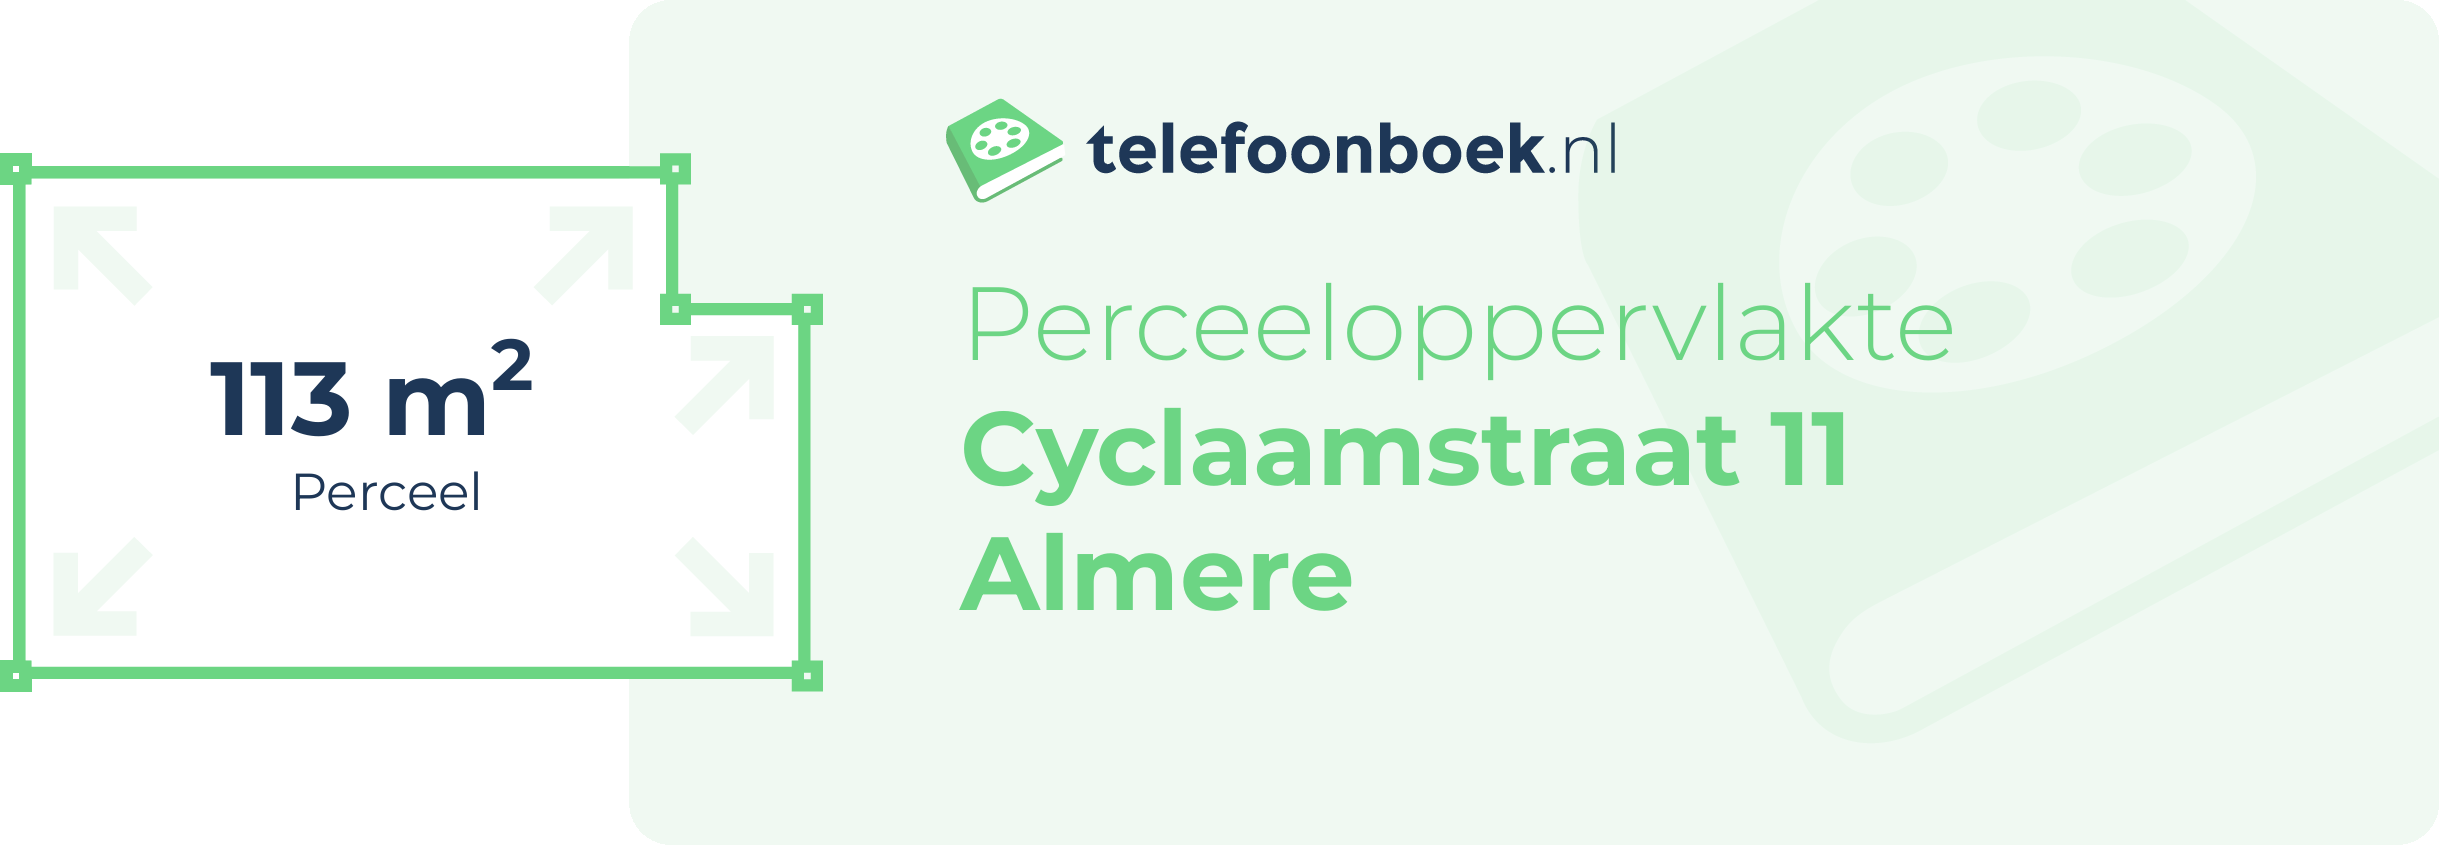 Perceeloppervlakte Cyclaamstraat 11 Almere